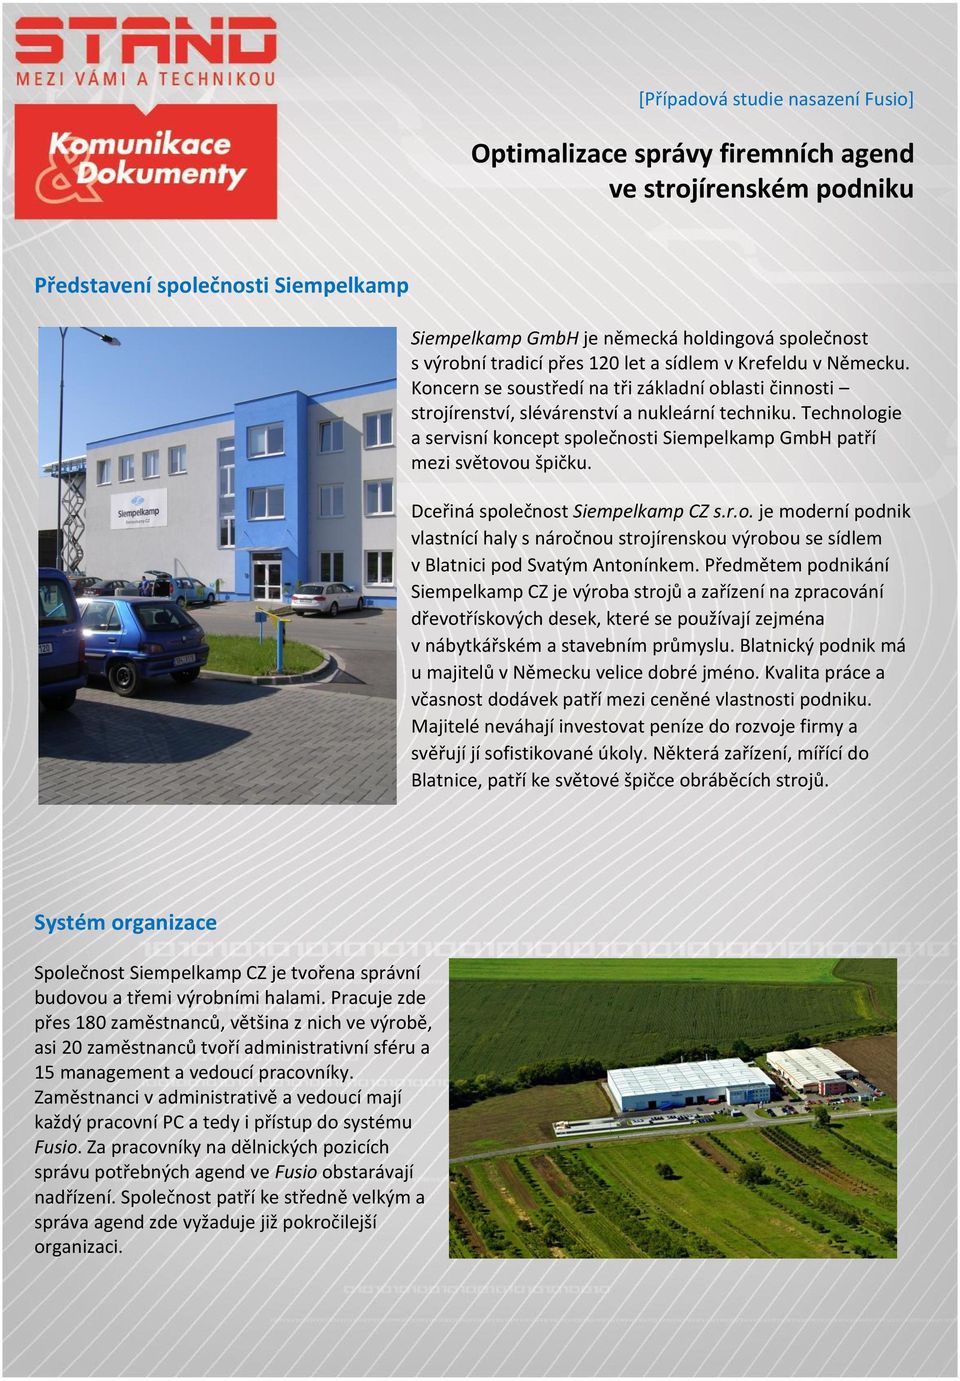 Technologie a servisní koncept společnosti Siempelkamp GmbH patří mezi světovou špičku. Dceřiná společnost Siempelkamp CZ s.r.o. je moderní podnik vlastnící haly s náročnou strojírenskou výrobou se sídlem v Blatnici pod Svatým Antonínkem.